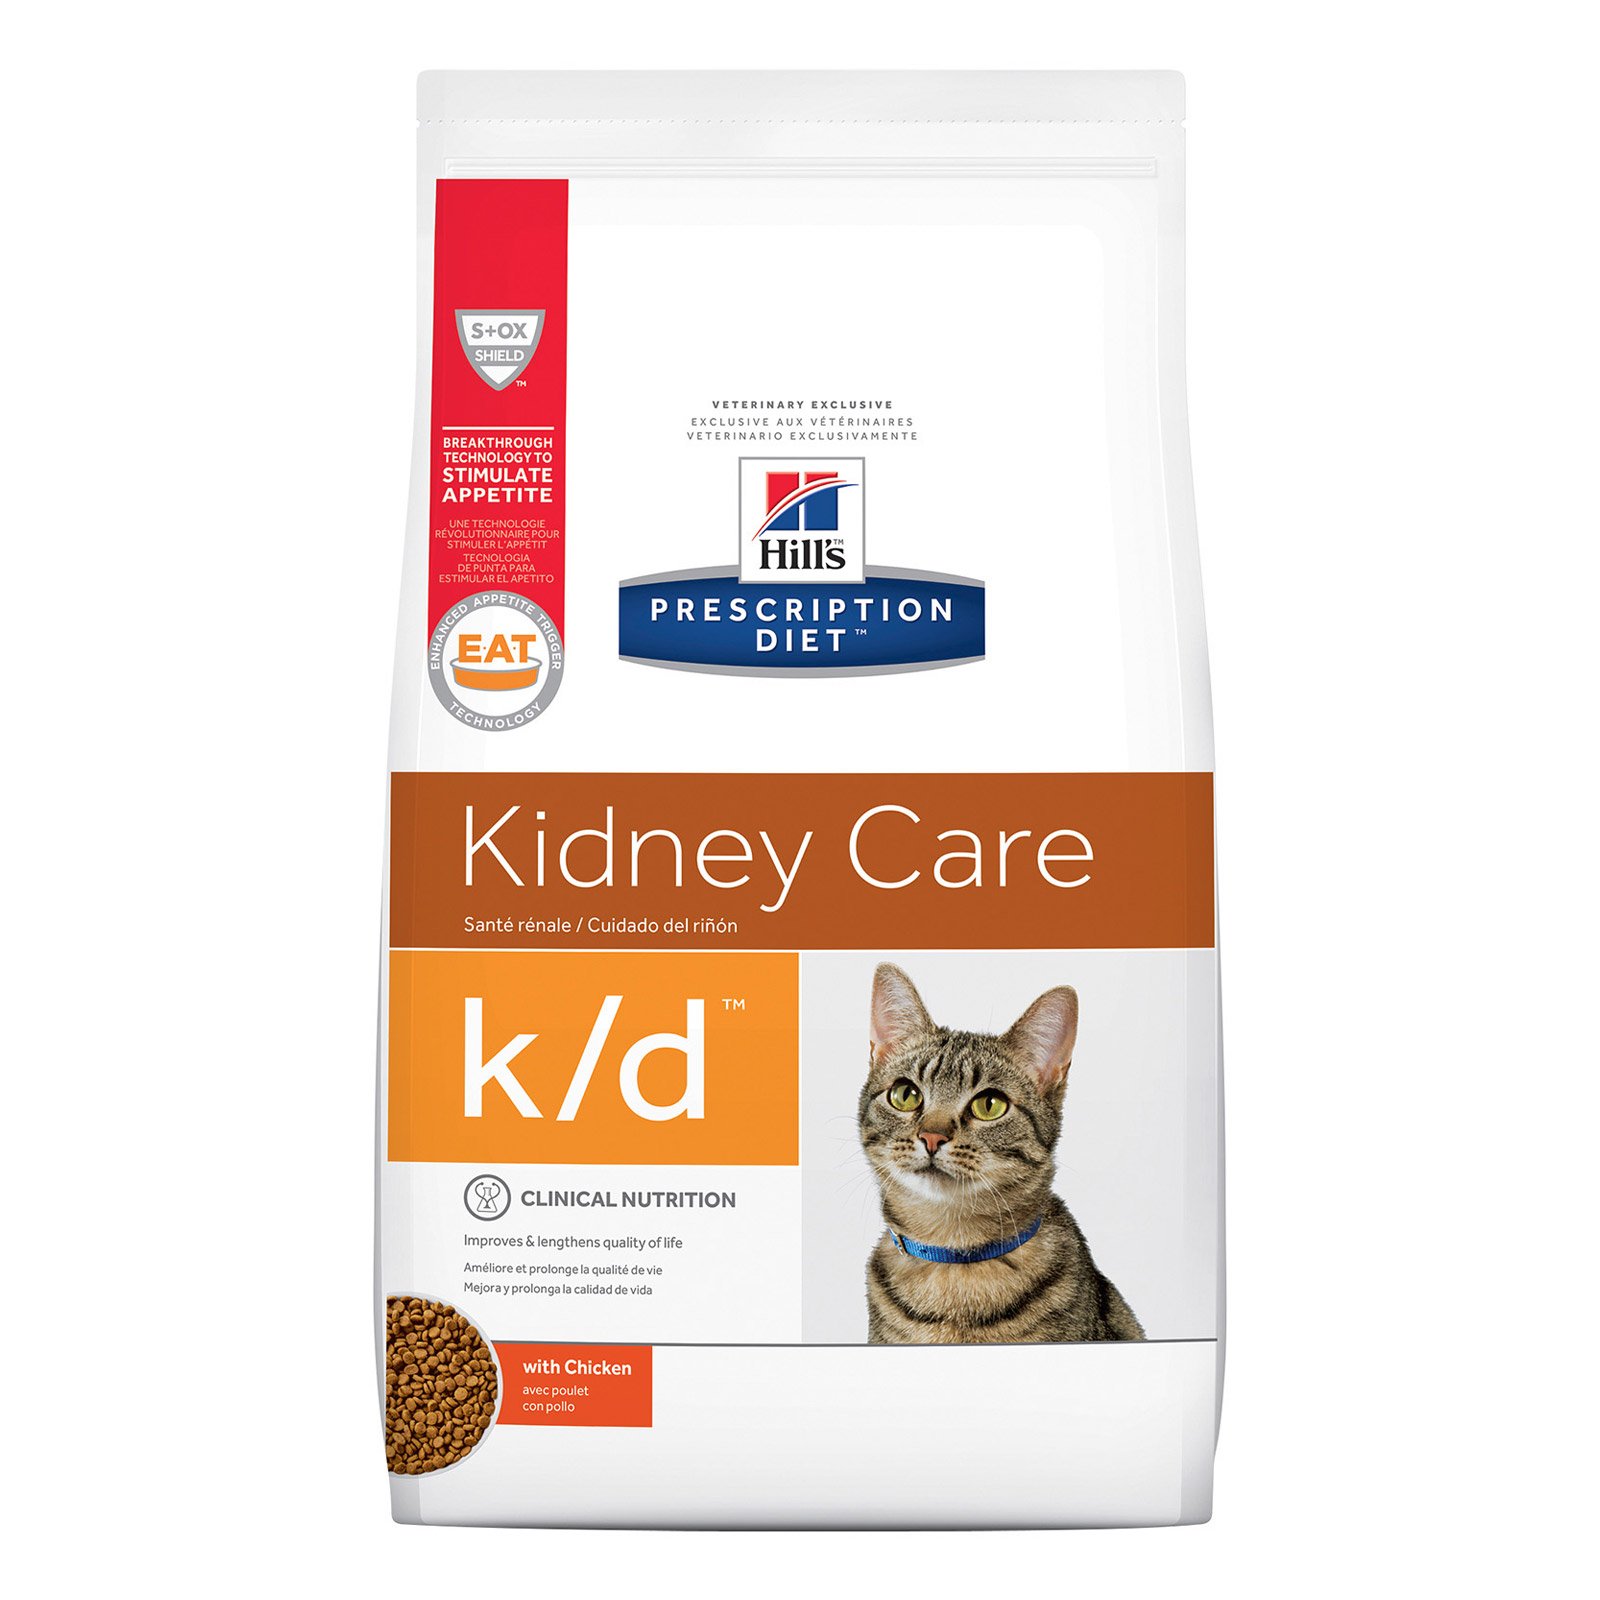  Hill's Prescription Diet k/d Kidney Care Salmon Cat Wet Pouch